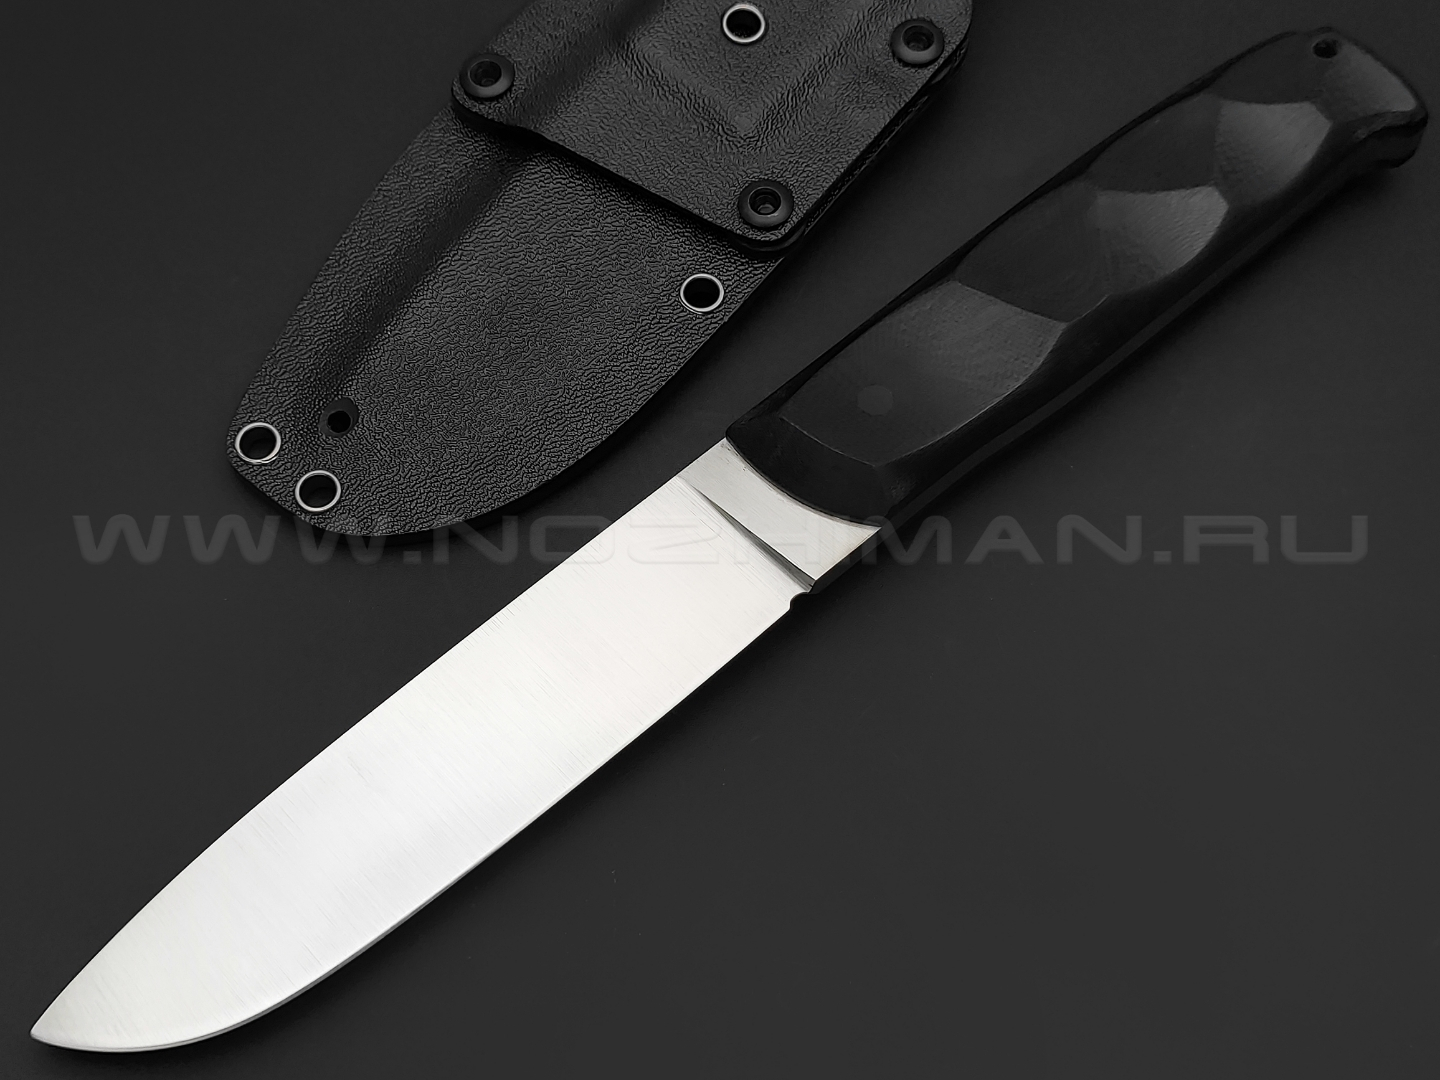 Волчий Век нож Wolfkniven сталь D2 WA satin, рукоять G10 black